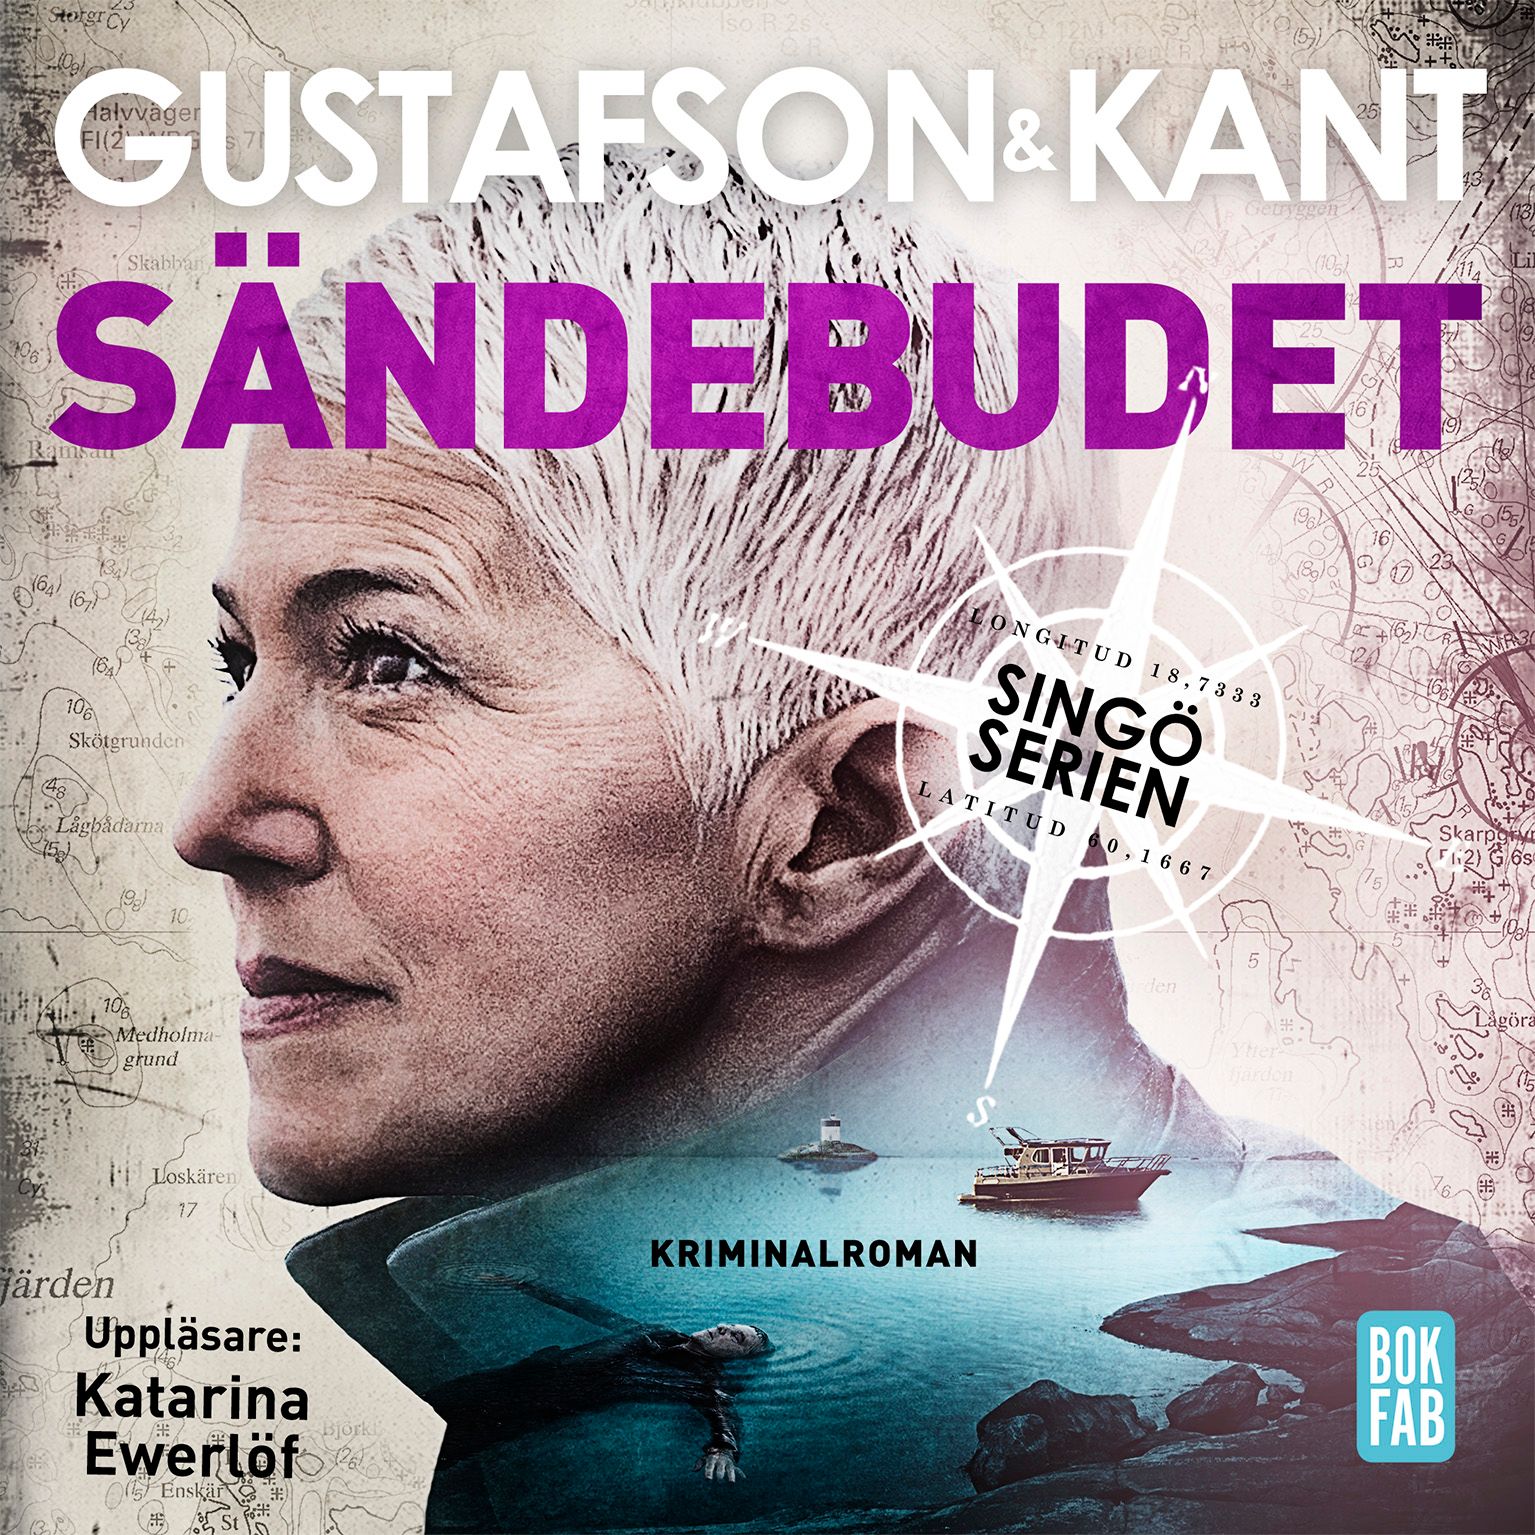 Sändebudet, ljudbok av Anders Gustafson, Johan Kant